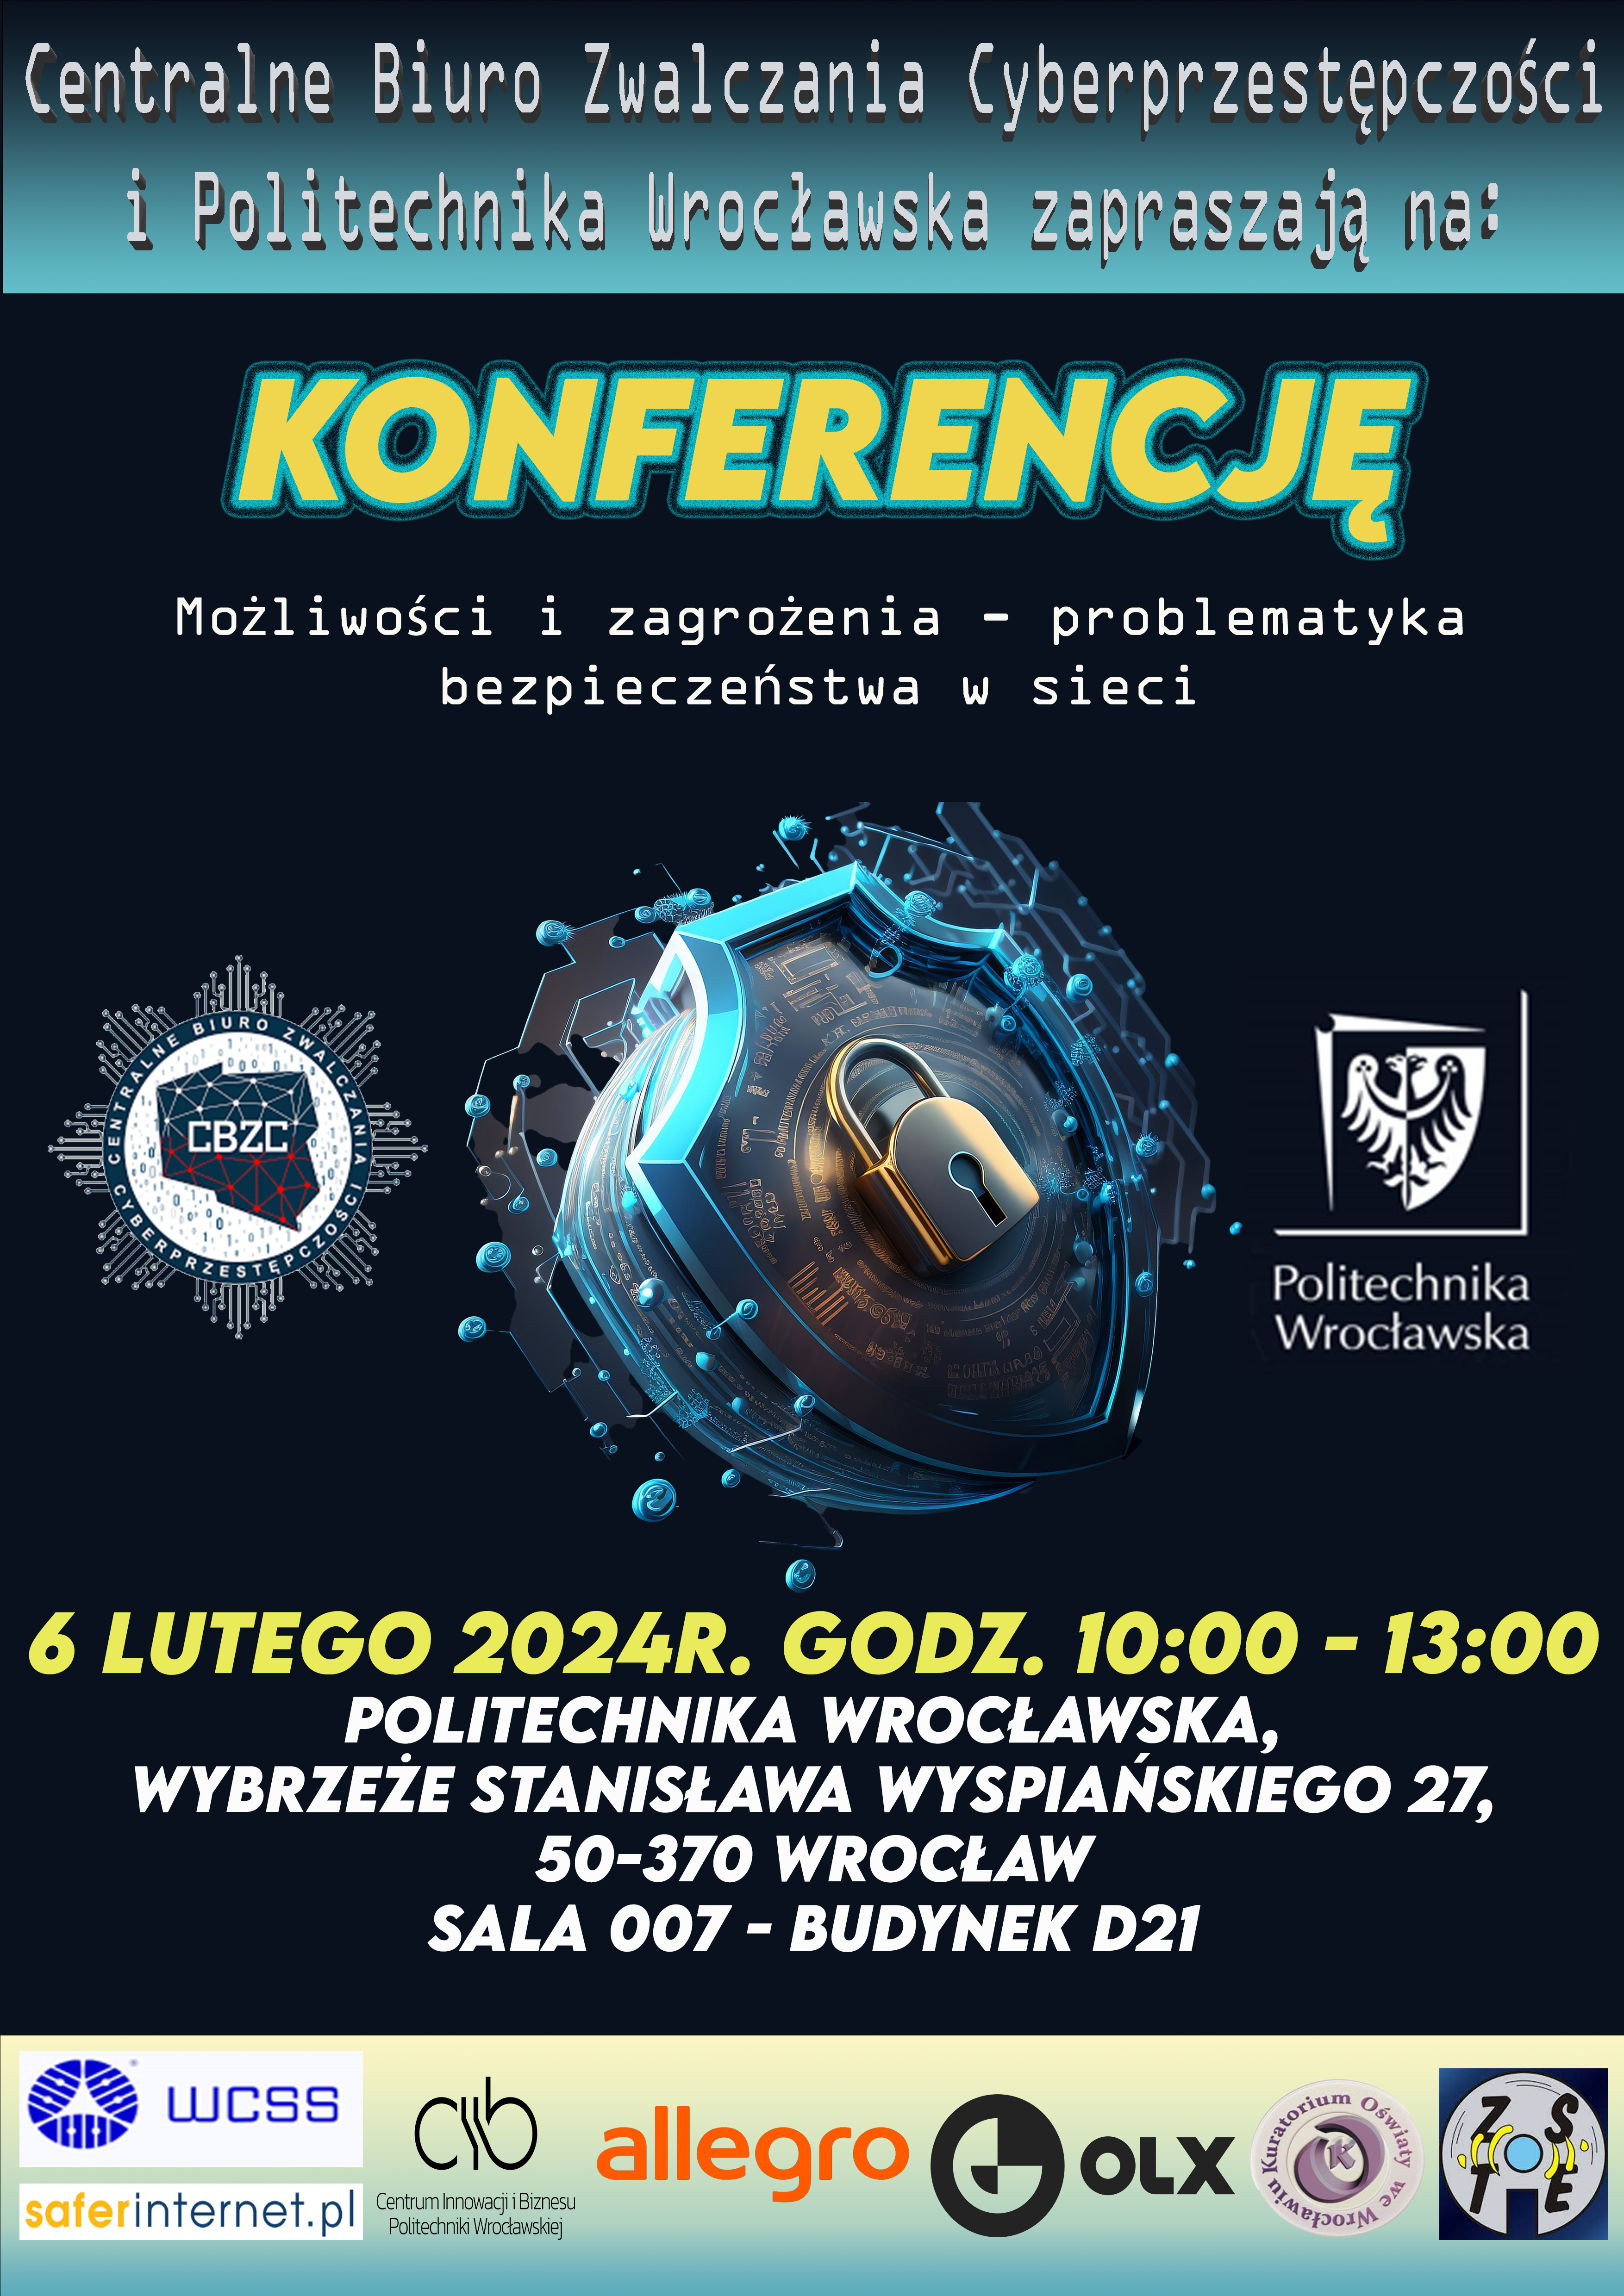 Plakat informujący o konferencji "Możliwości i zagrożenia - problematyka bezpieczeństwa sieci". Wydarzenie odbywa sie w daniu 6 lutego 2024 w godzinach 10:00-13:00. 